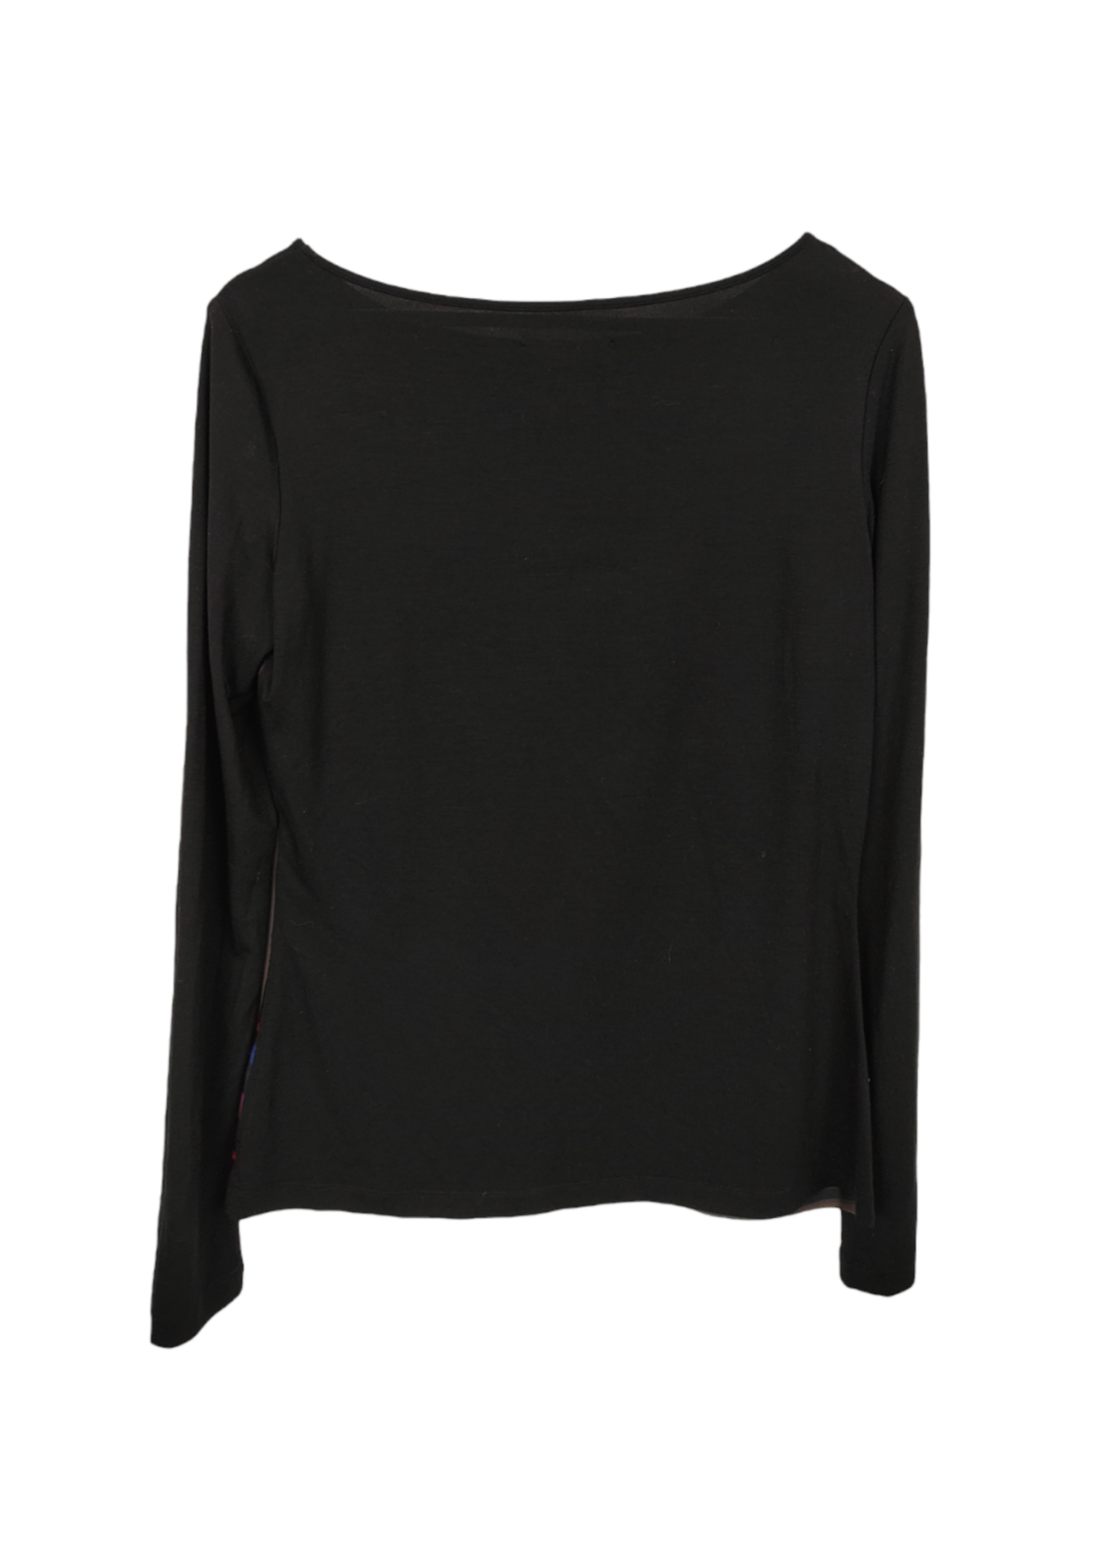 Ριγέ Γυναικεία Μπλούζα COMMA σε Μαύρο χρώμα (Small)